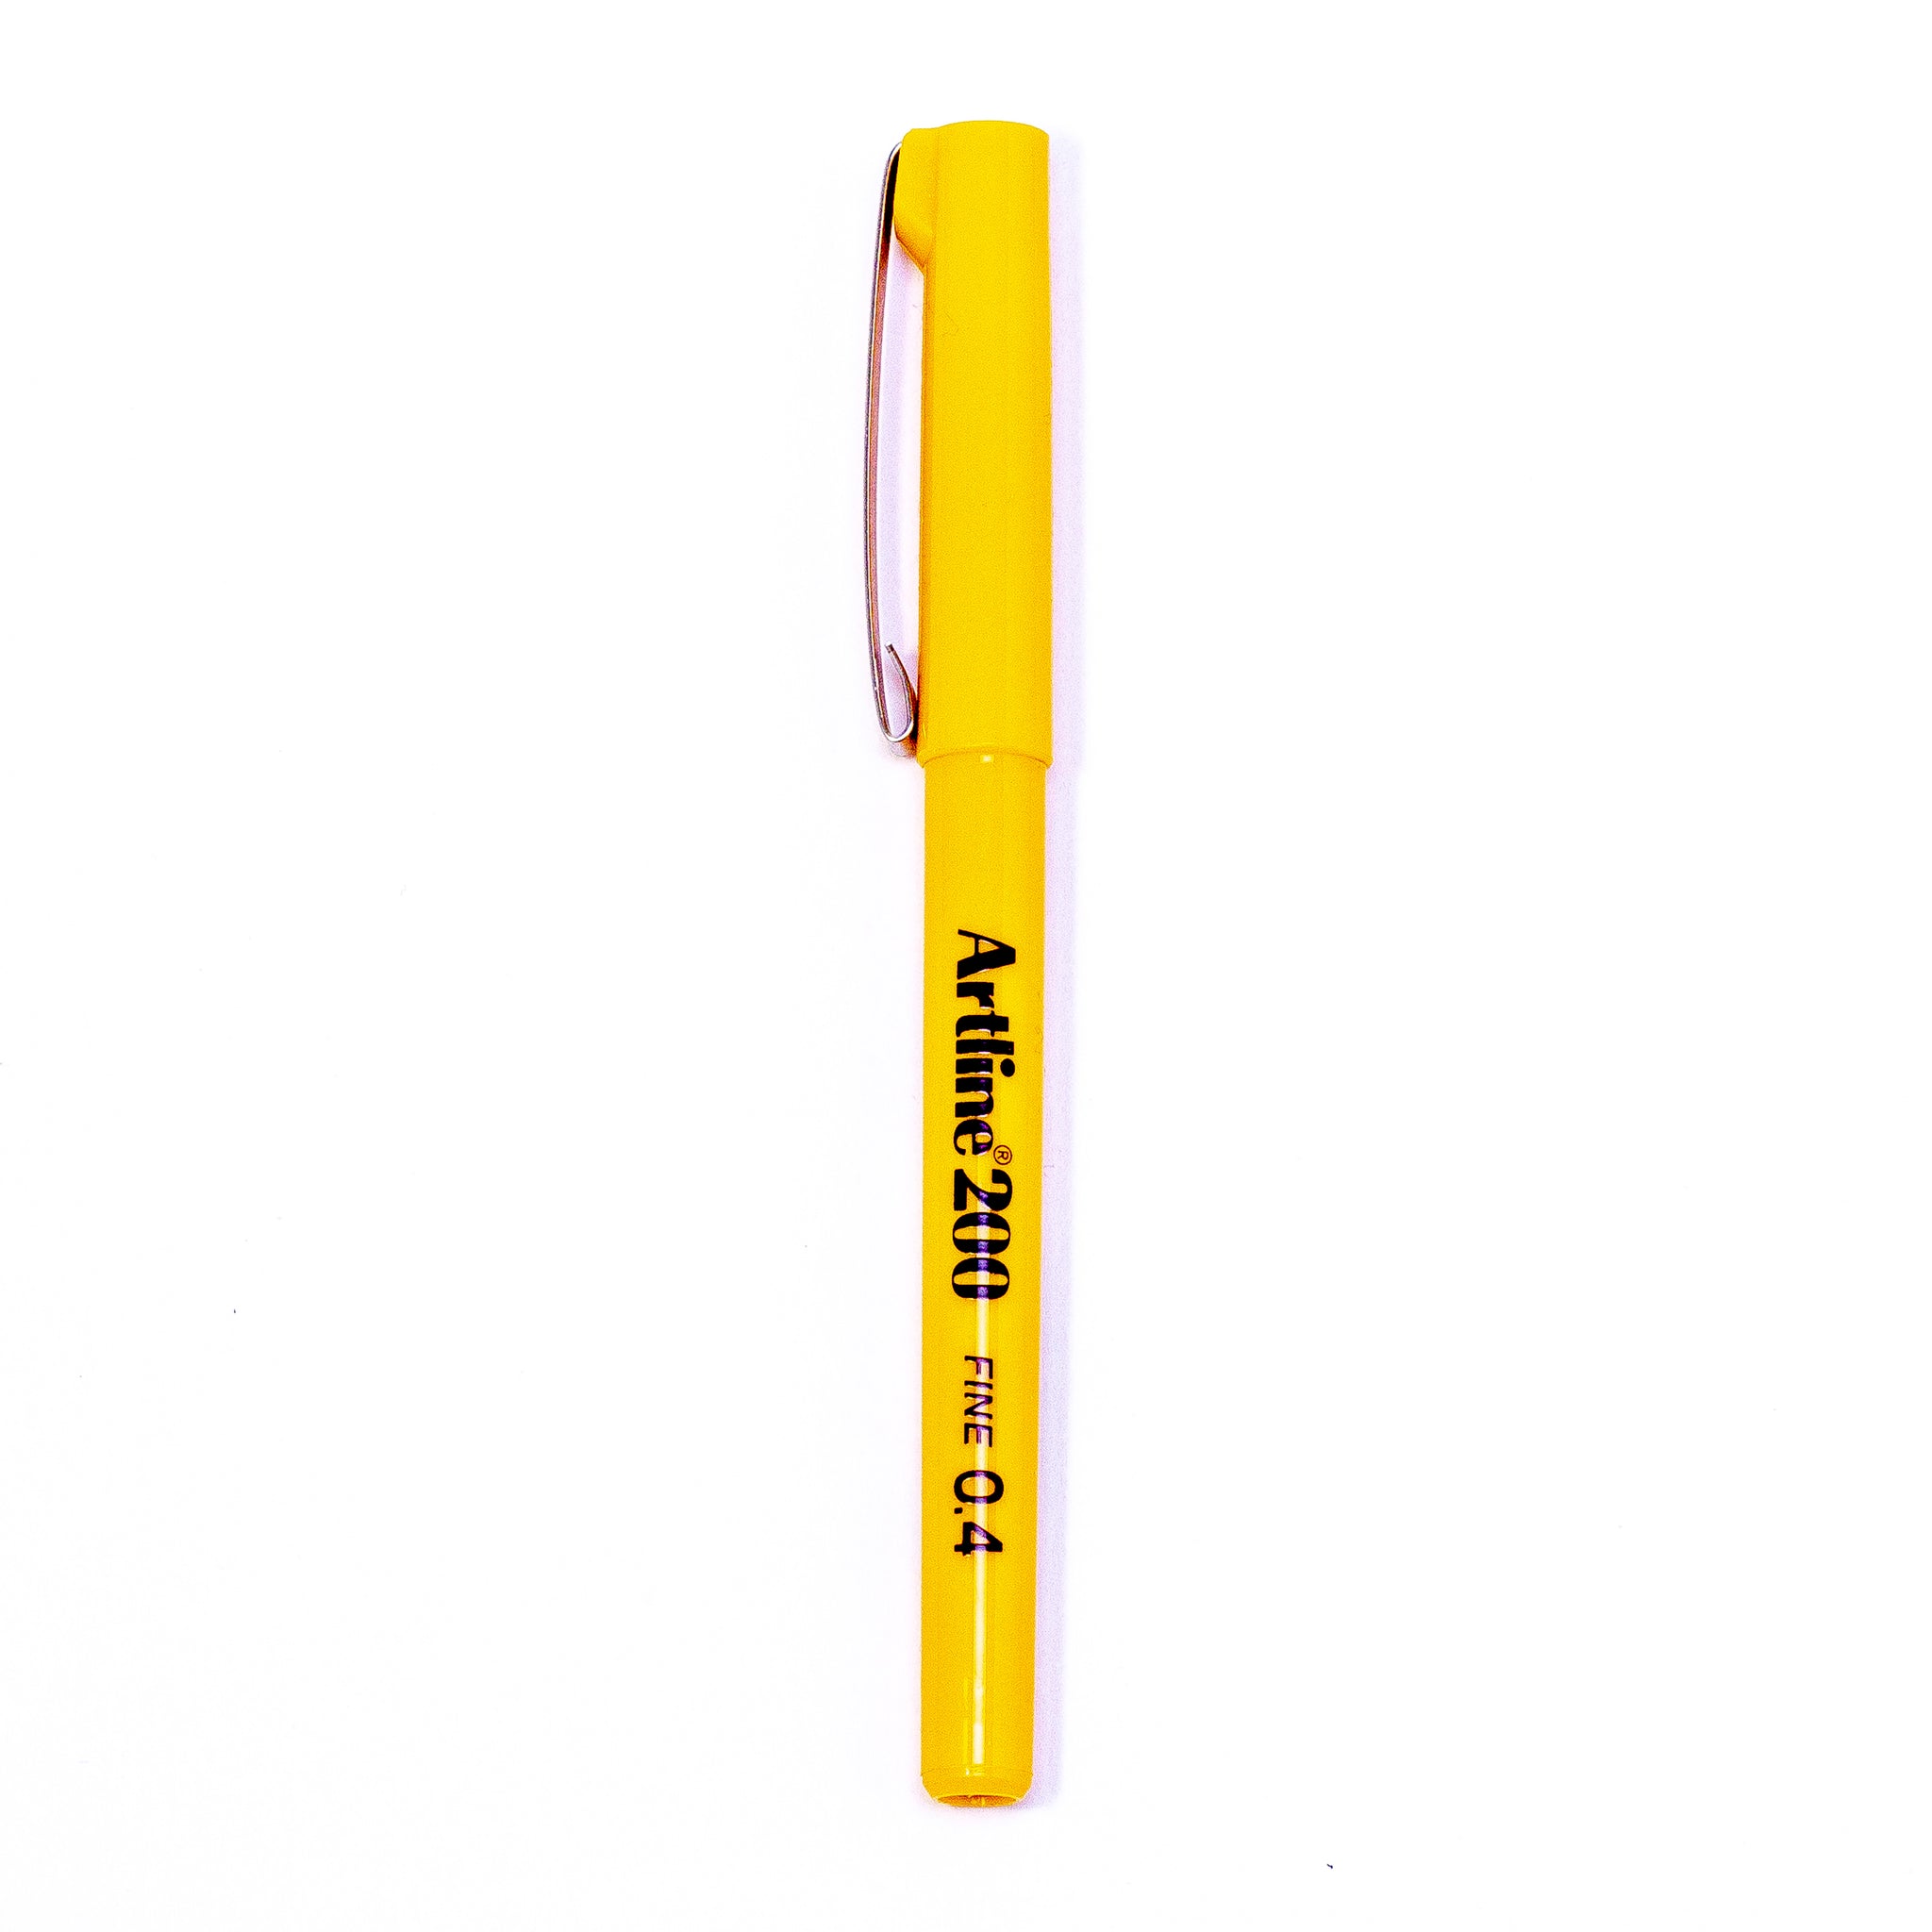 Artline 200 Fineliner Pen - Yellow